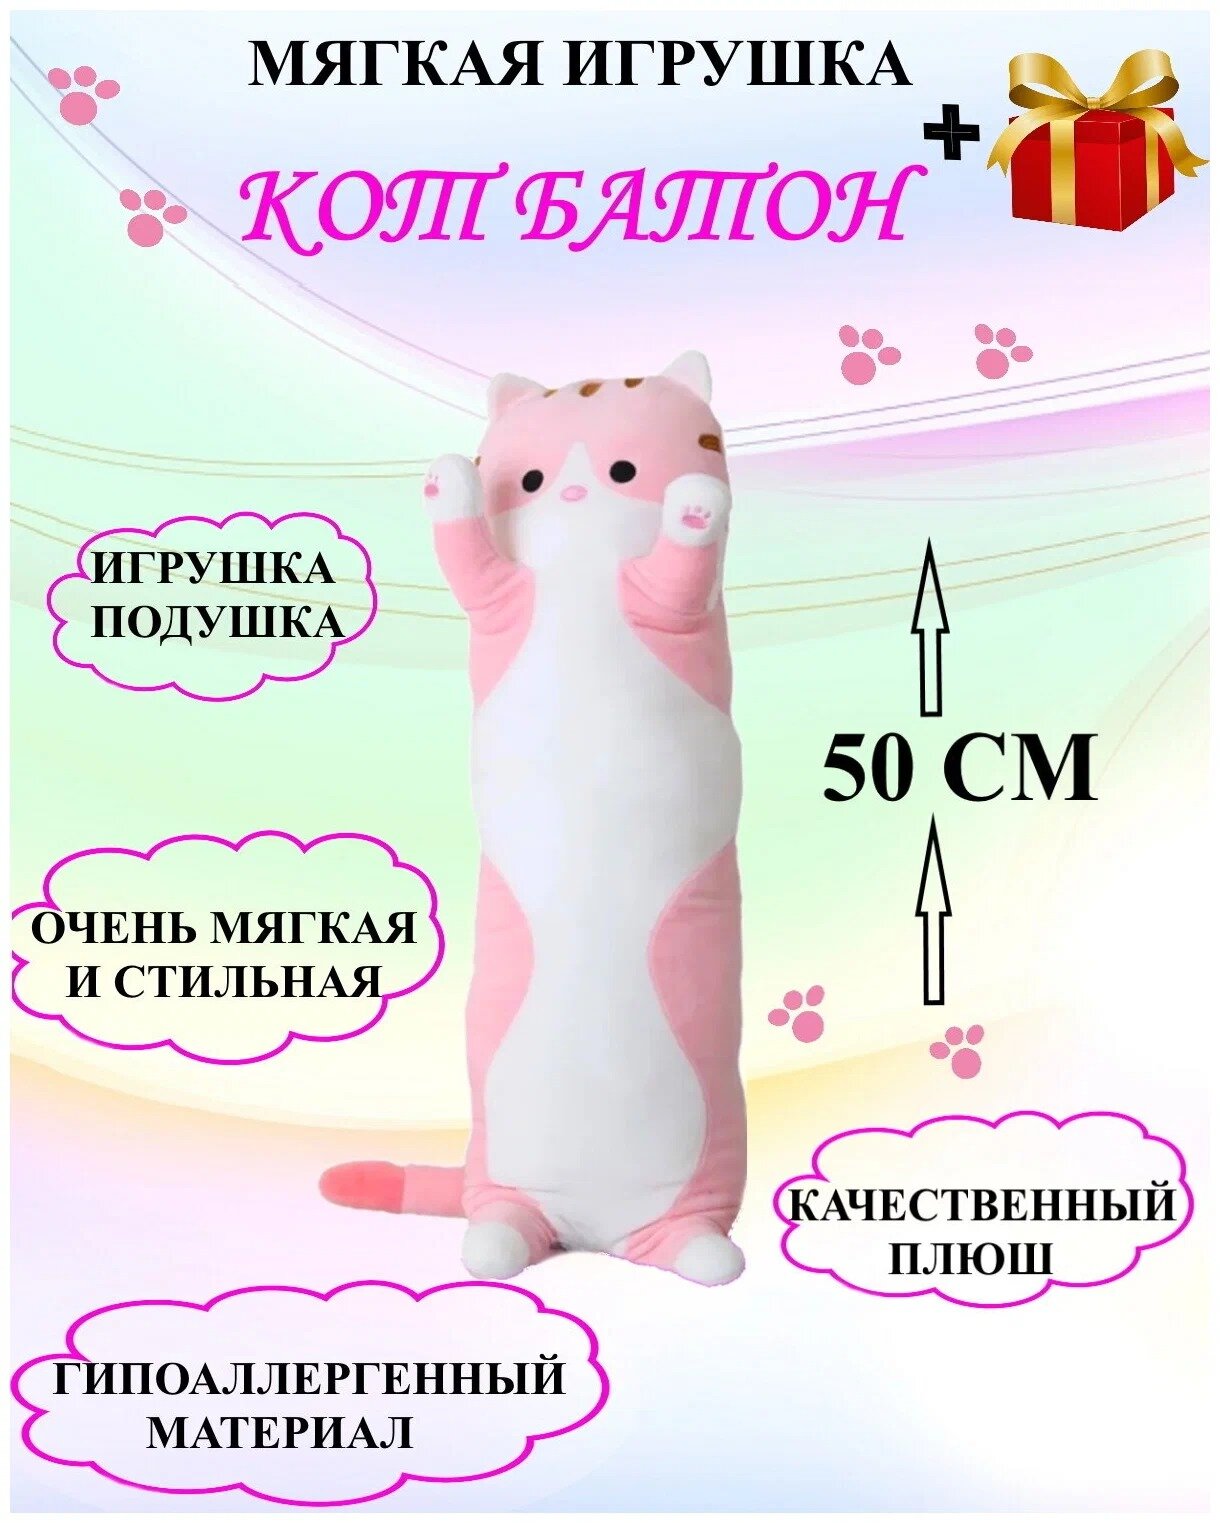 Кот батон розовый, плюшевая игрушка, плюшевый кот, длинный кот 50 см